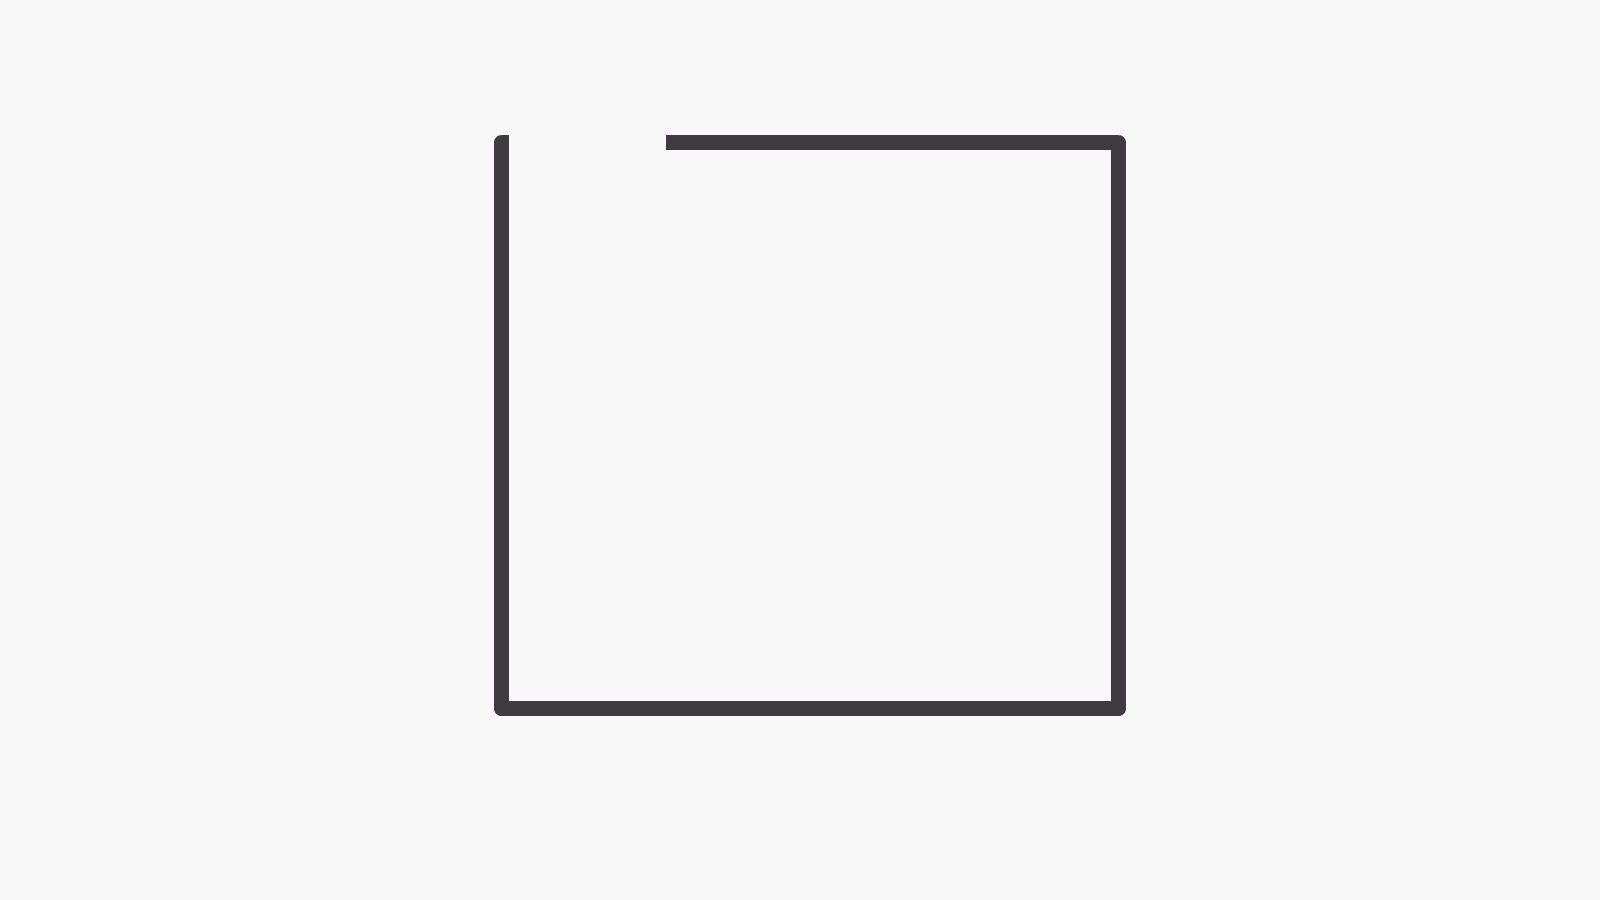 Дали на оваа слика гледате квадрат? Одговорот на ова прашање кажува за вашите политички верувања